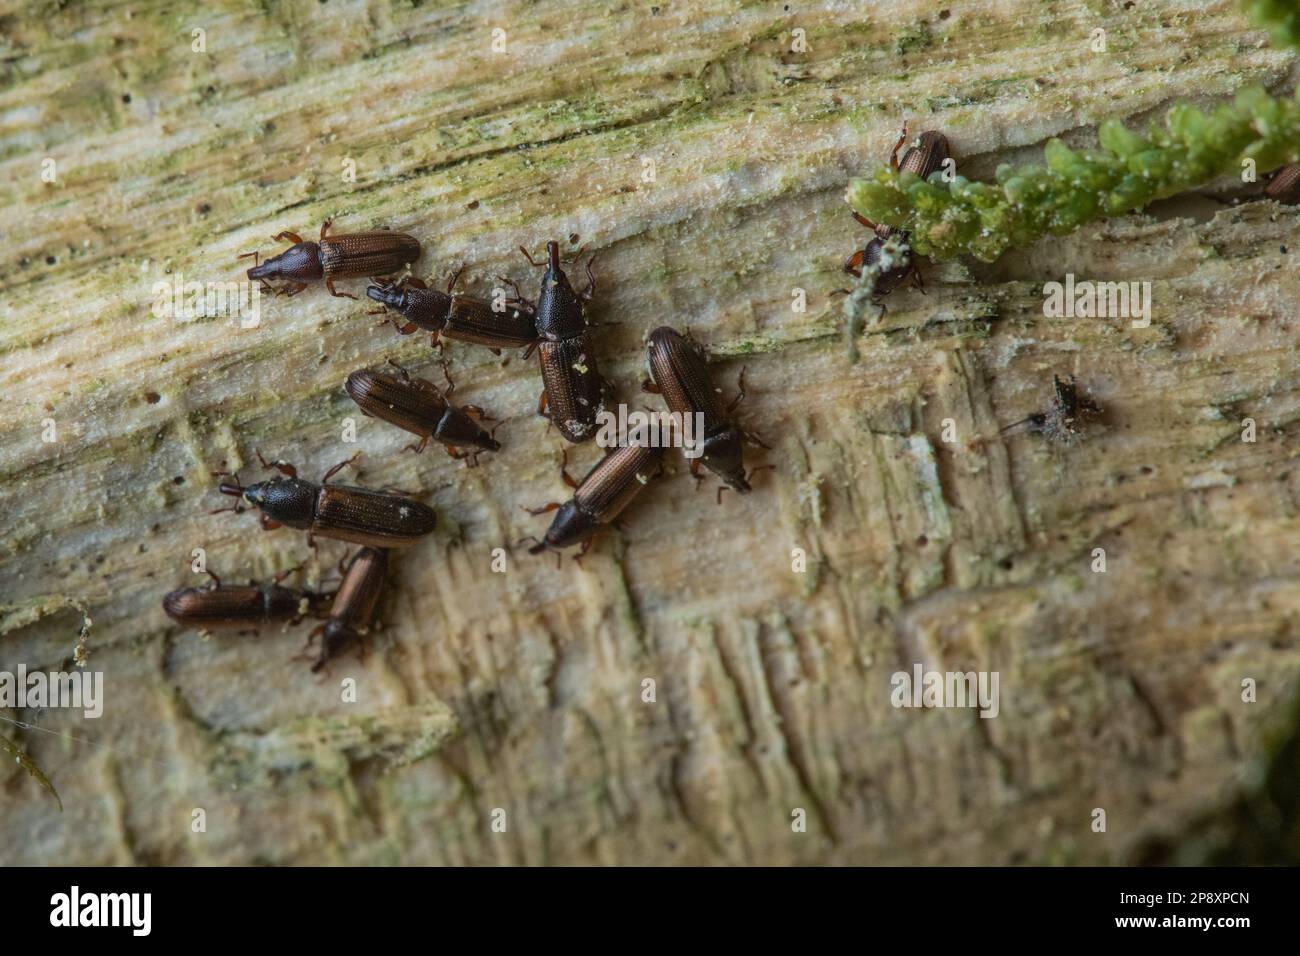 Der langweilige Holzkäfer Euophryum Confine stammt aus Aotearoa Neuseeland. Eine Gruppe winziger Käfer ernähren sich von feuchtem Holz im Wald. Stockfoto